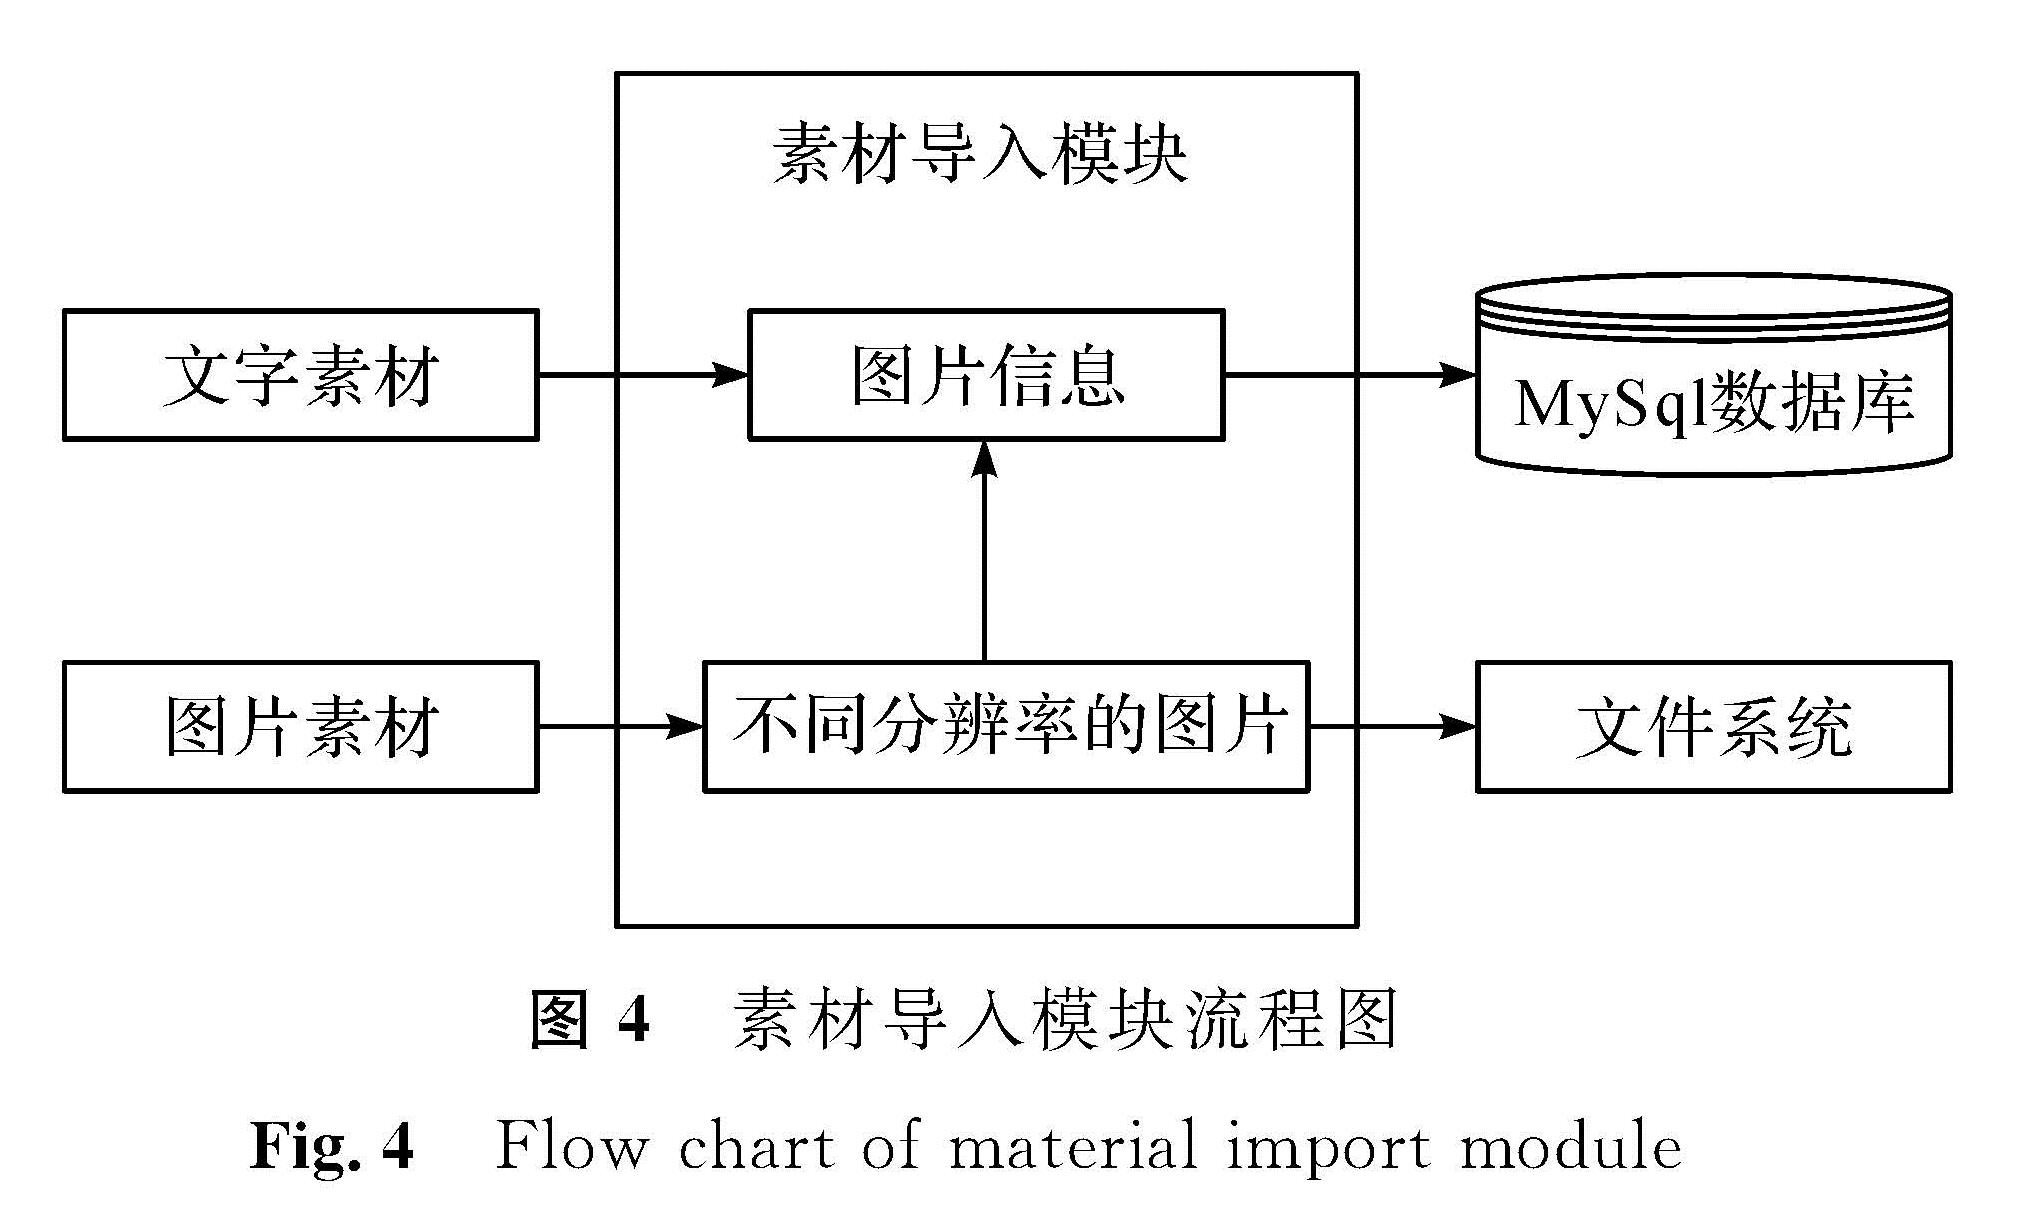 图4 素材导入模块流程图<br/>Fig.4 Flow chart of material import module